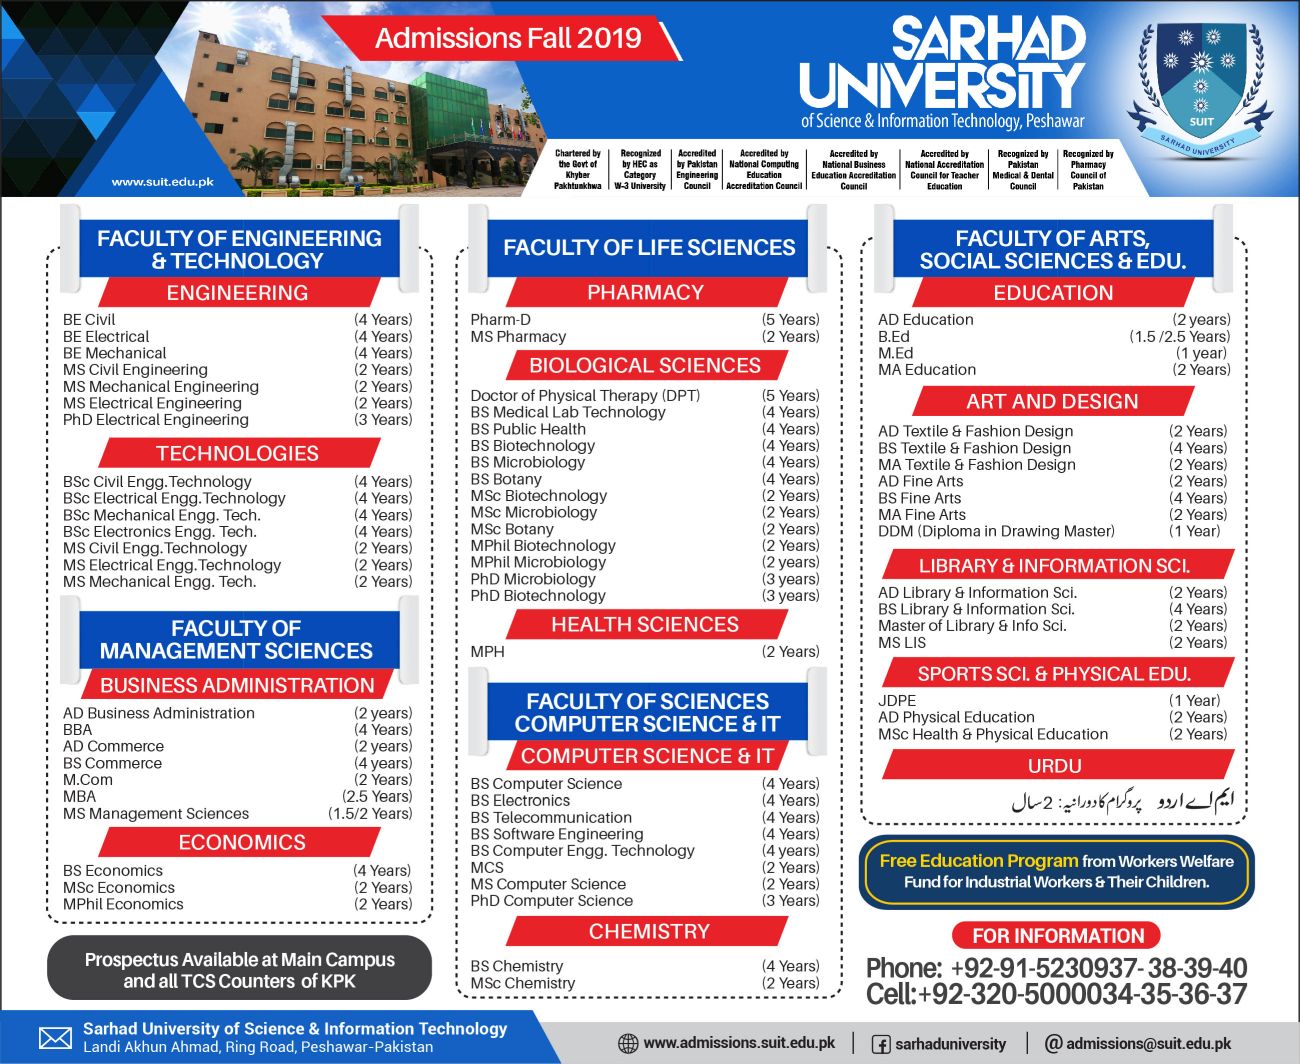 Sarhad University Admission Fall 2019 Form Last Date